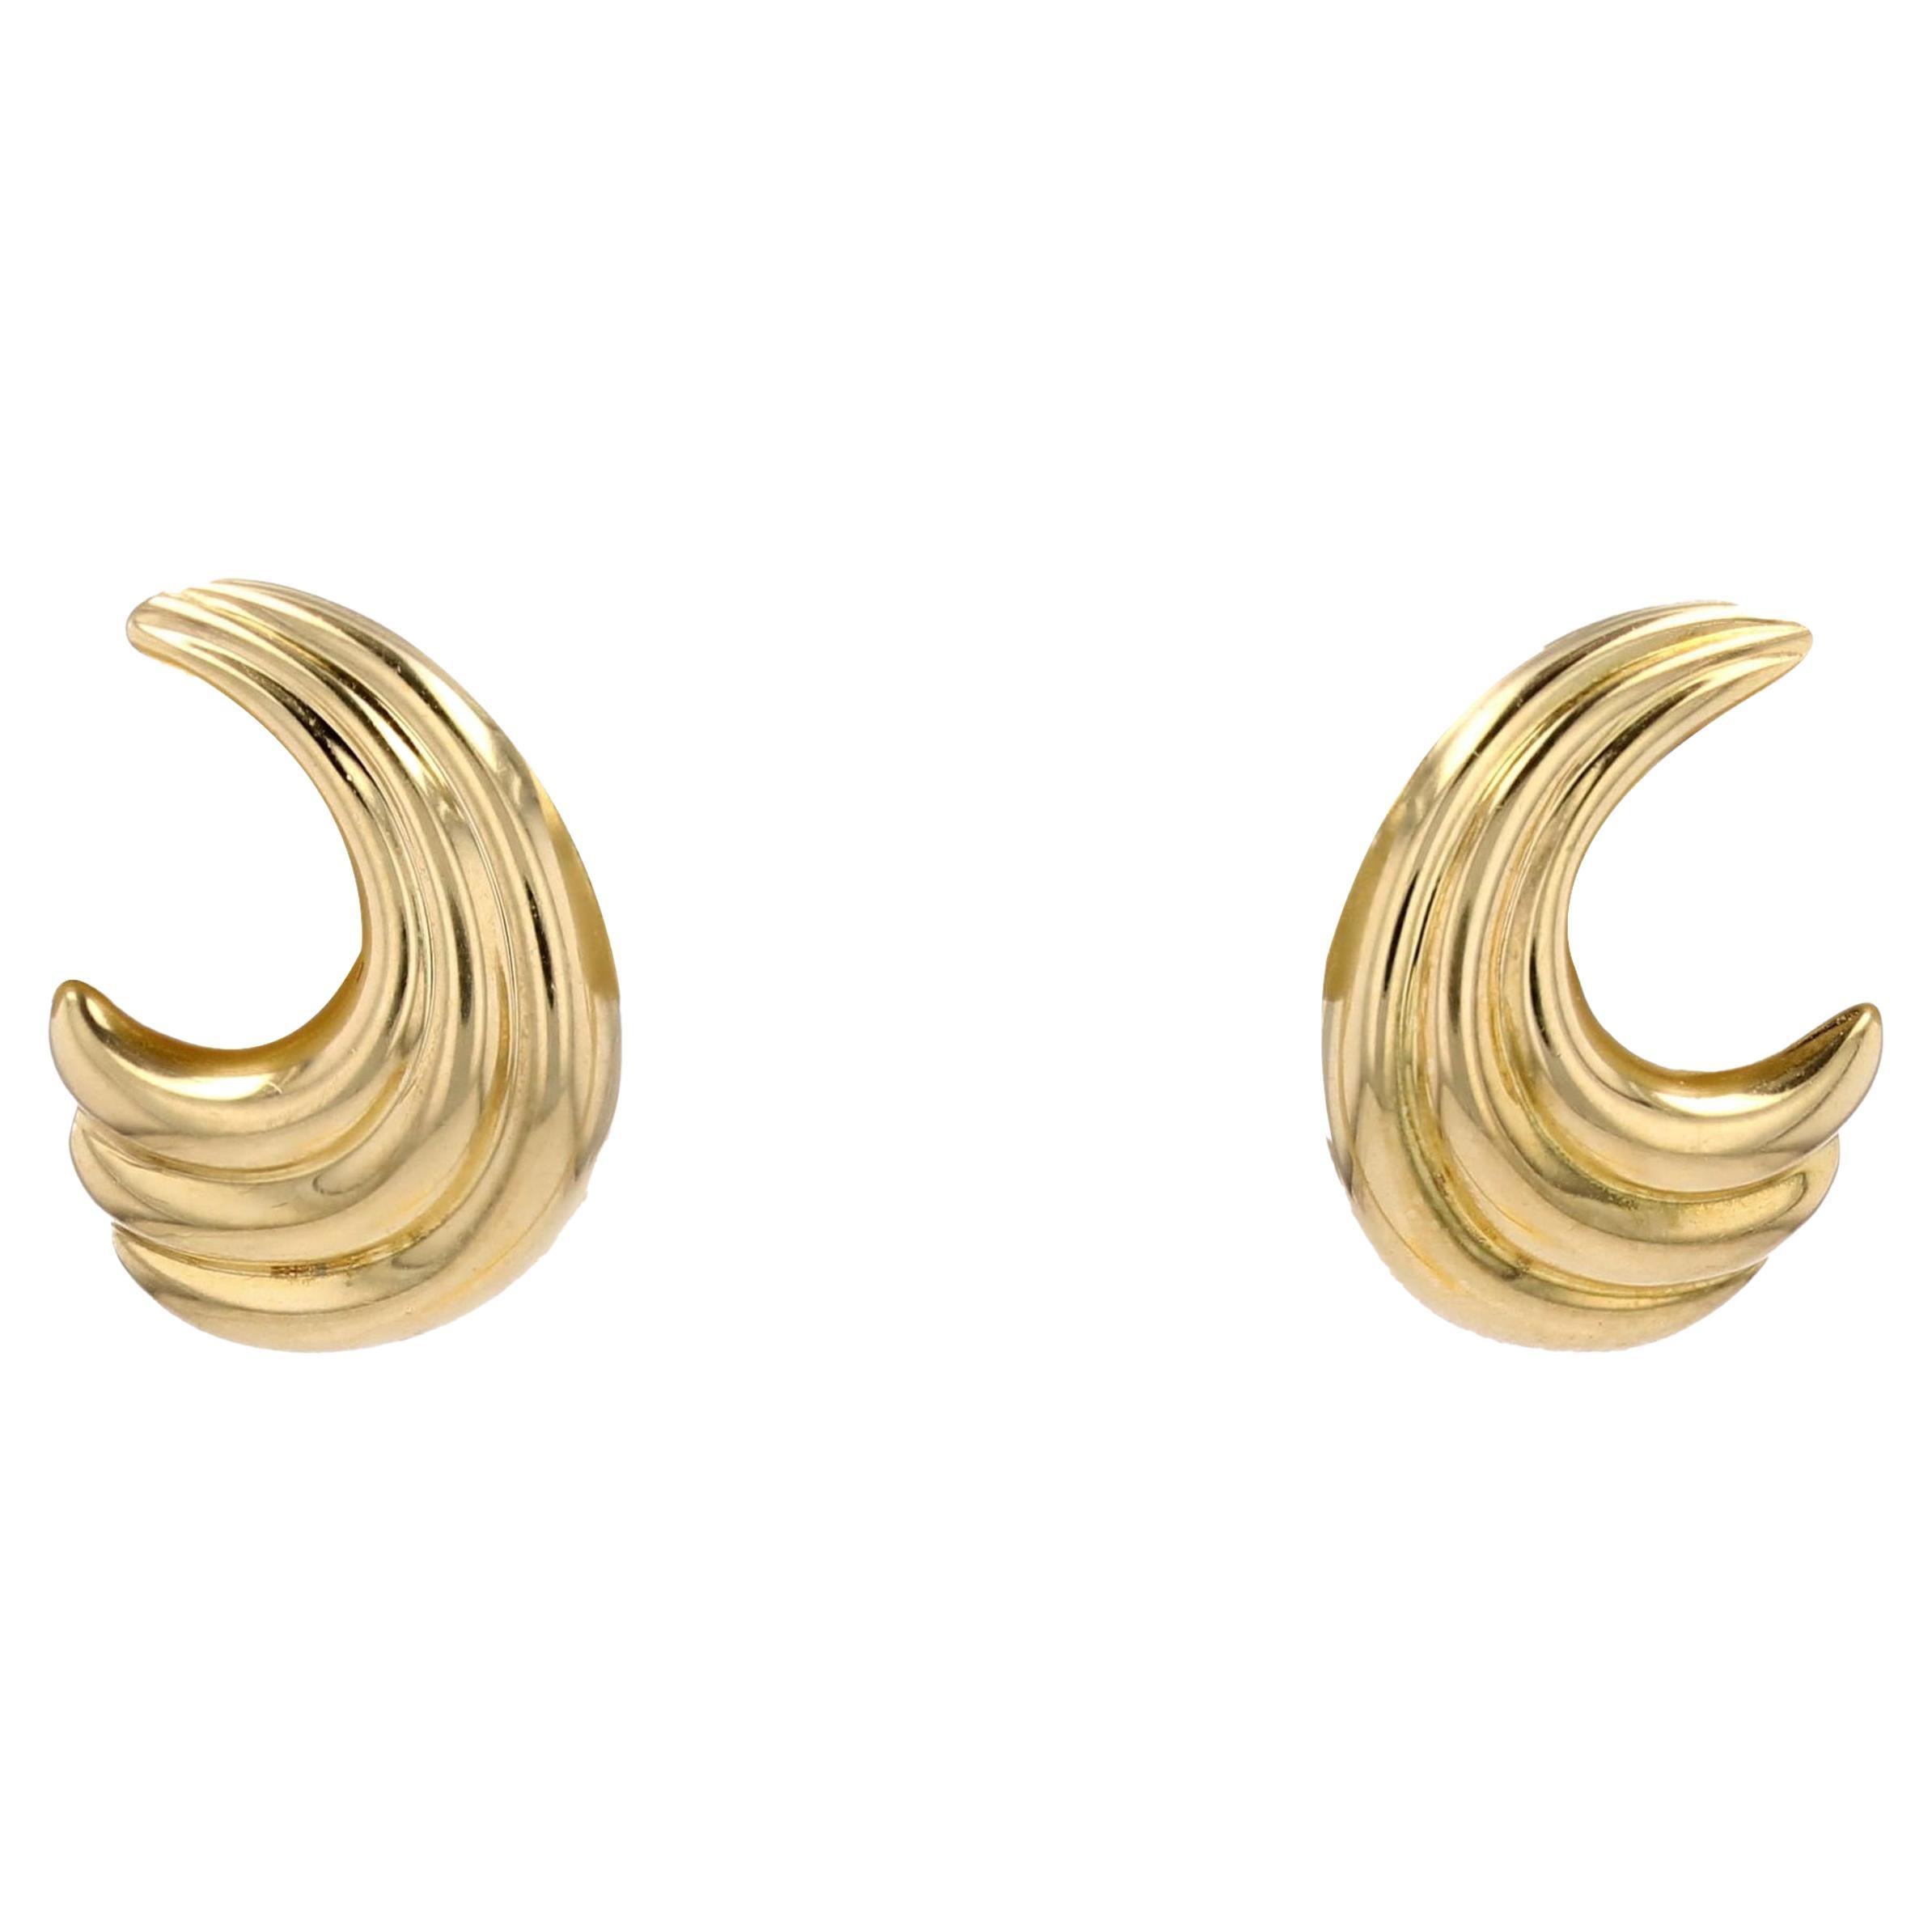 Modern 18 Karat Yellow Gold Gadrooned Earring